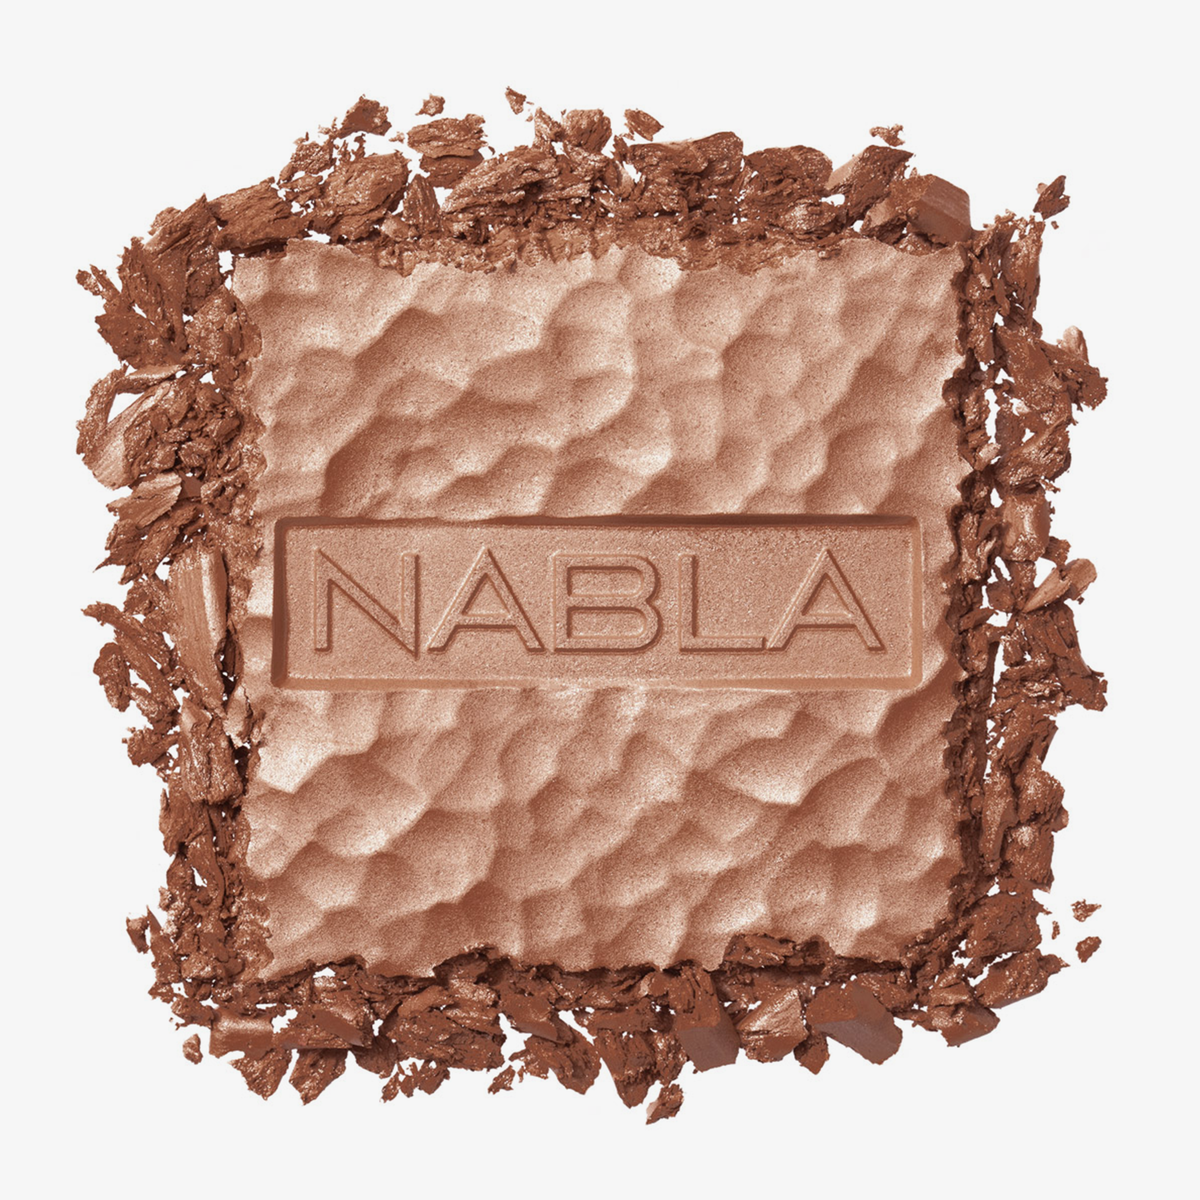 Puder des NABLA Cosmetics Skin Bronzing in der Farbe Ambra. Weißer Hintergrund.